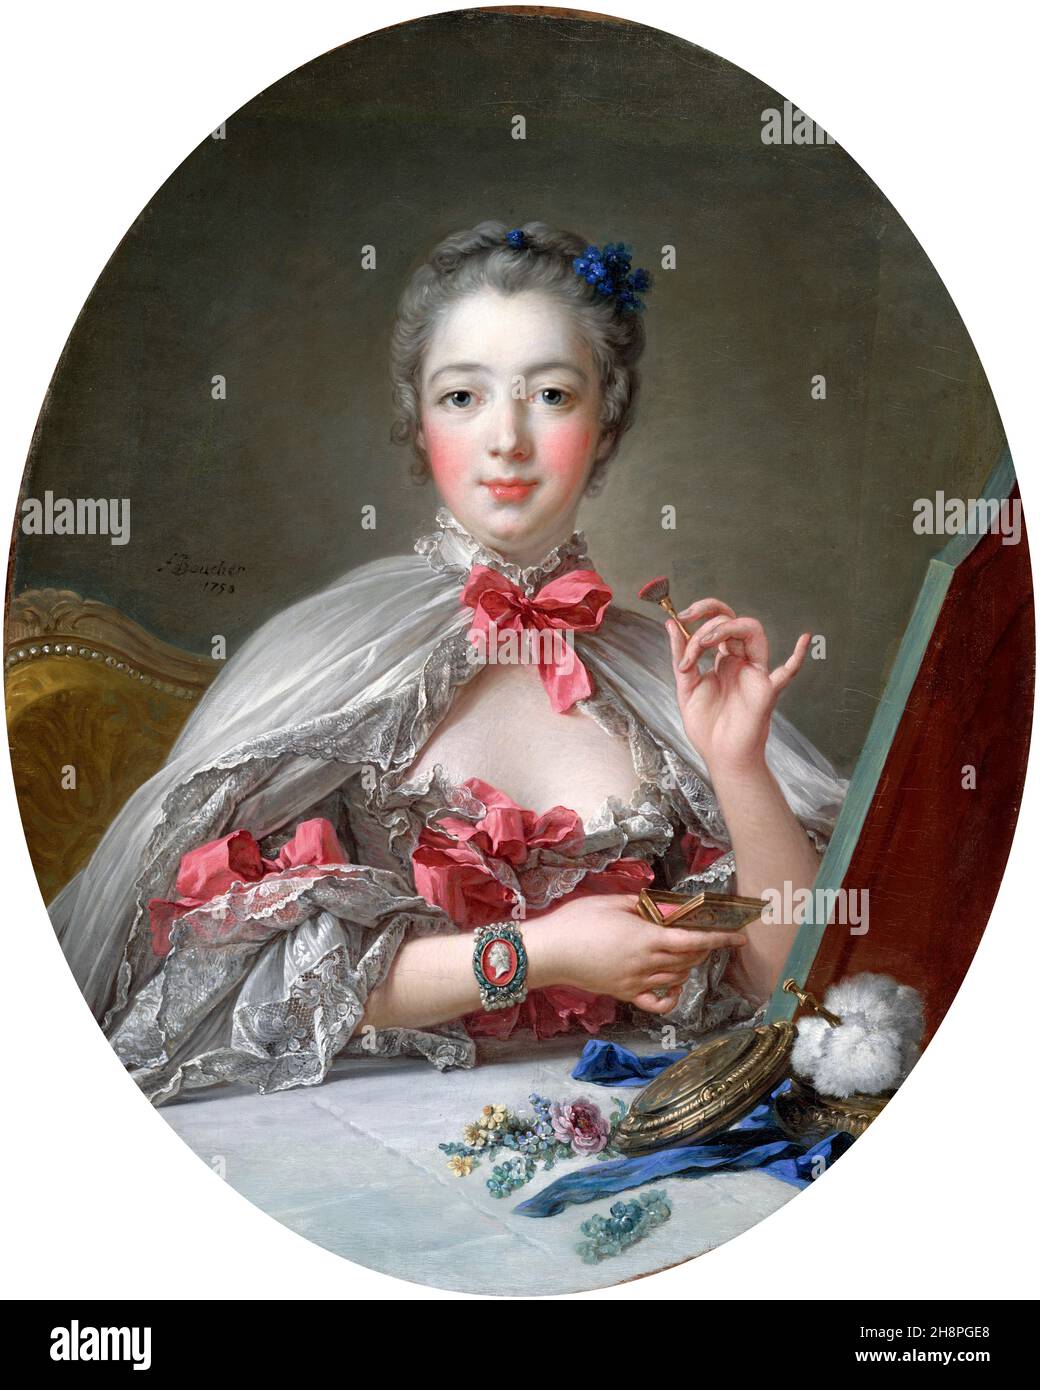 Madame de Pompadour. Porträt von Jeanne Antoinette Poisson, Marquise de Pompadour (1721-1764) von Francois Boucher, Öl auf Leinwand, 1750. Madame de Pompadour war von 1745 bis 1751 Mitglied des französischen Hofes und offizielle Hauptherrin von Ludwig XV. Stockfoto